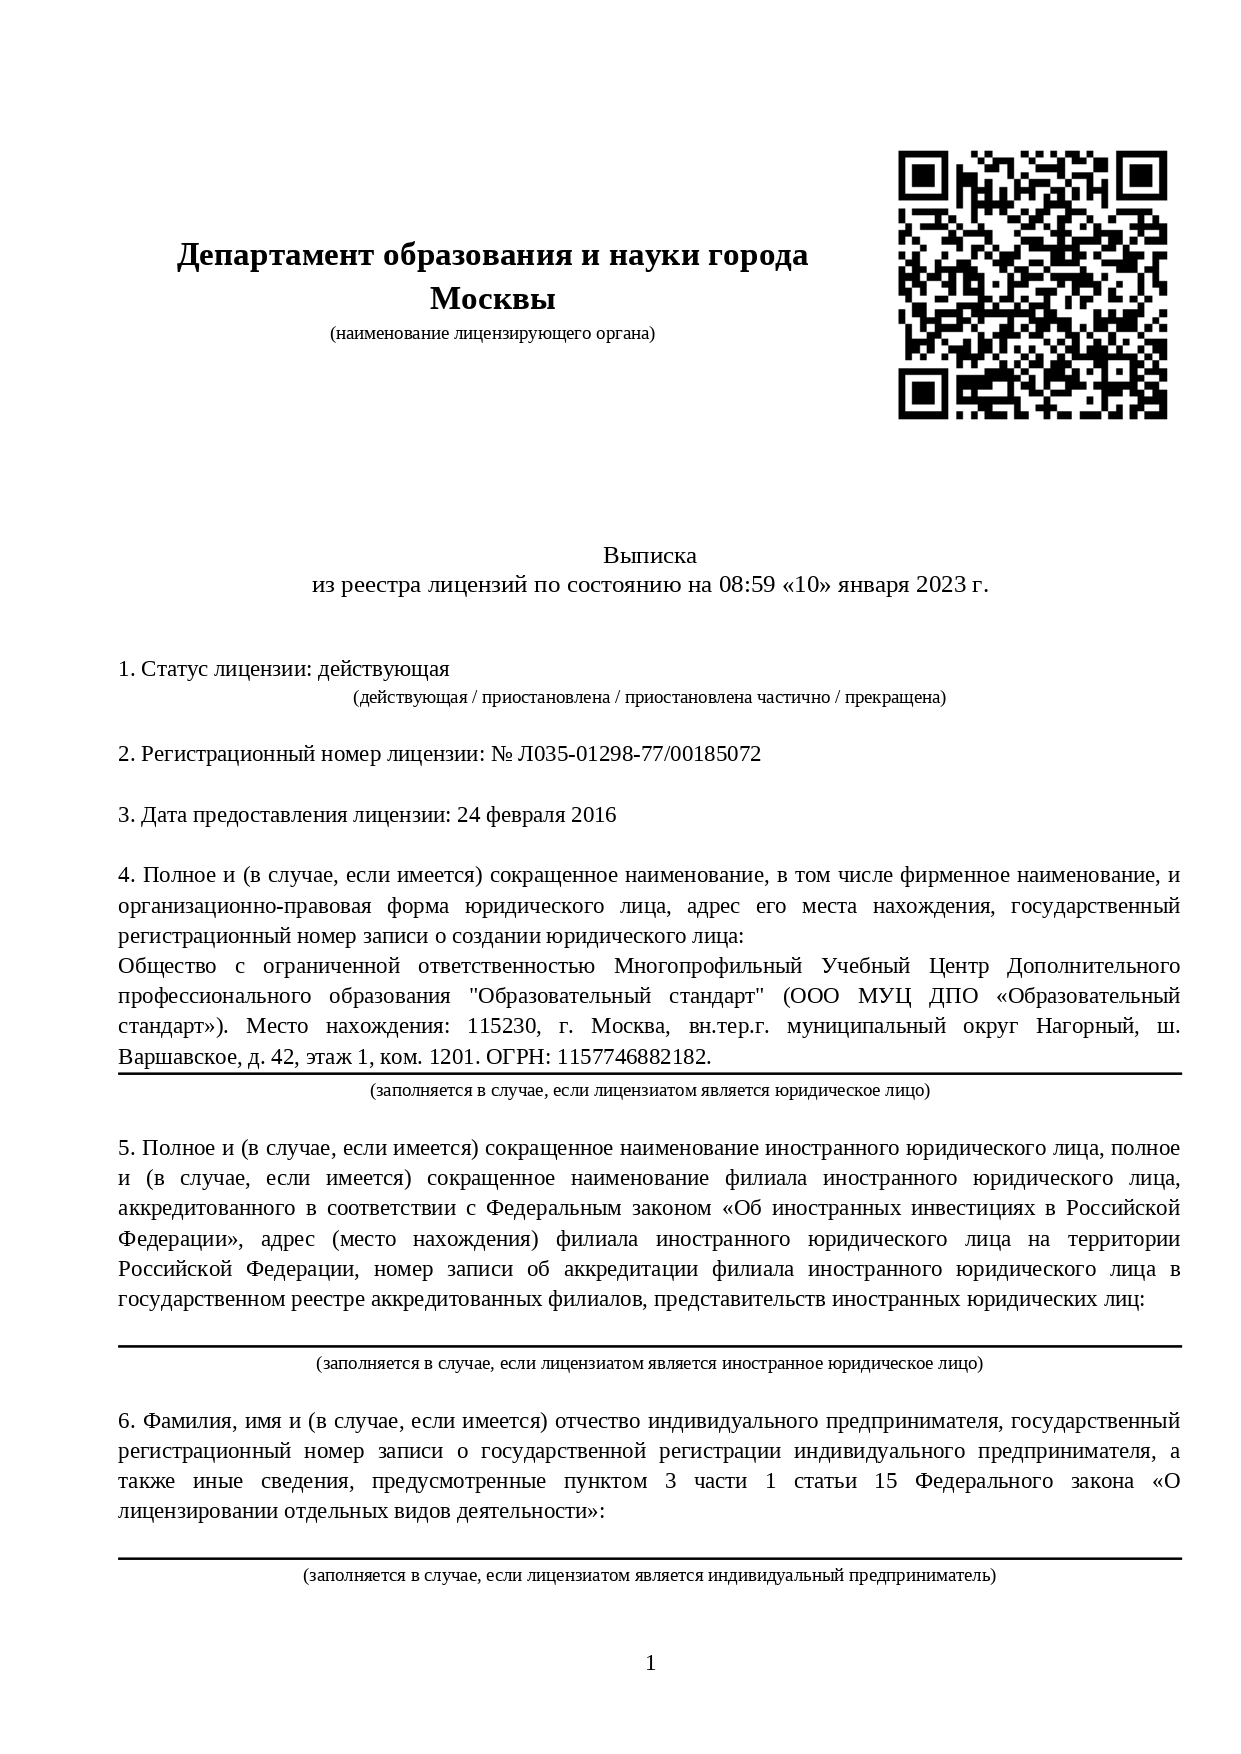 Реестровая выписка Департамента образования и науки города Москвы